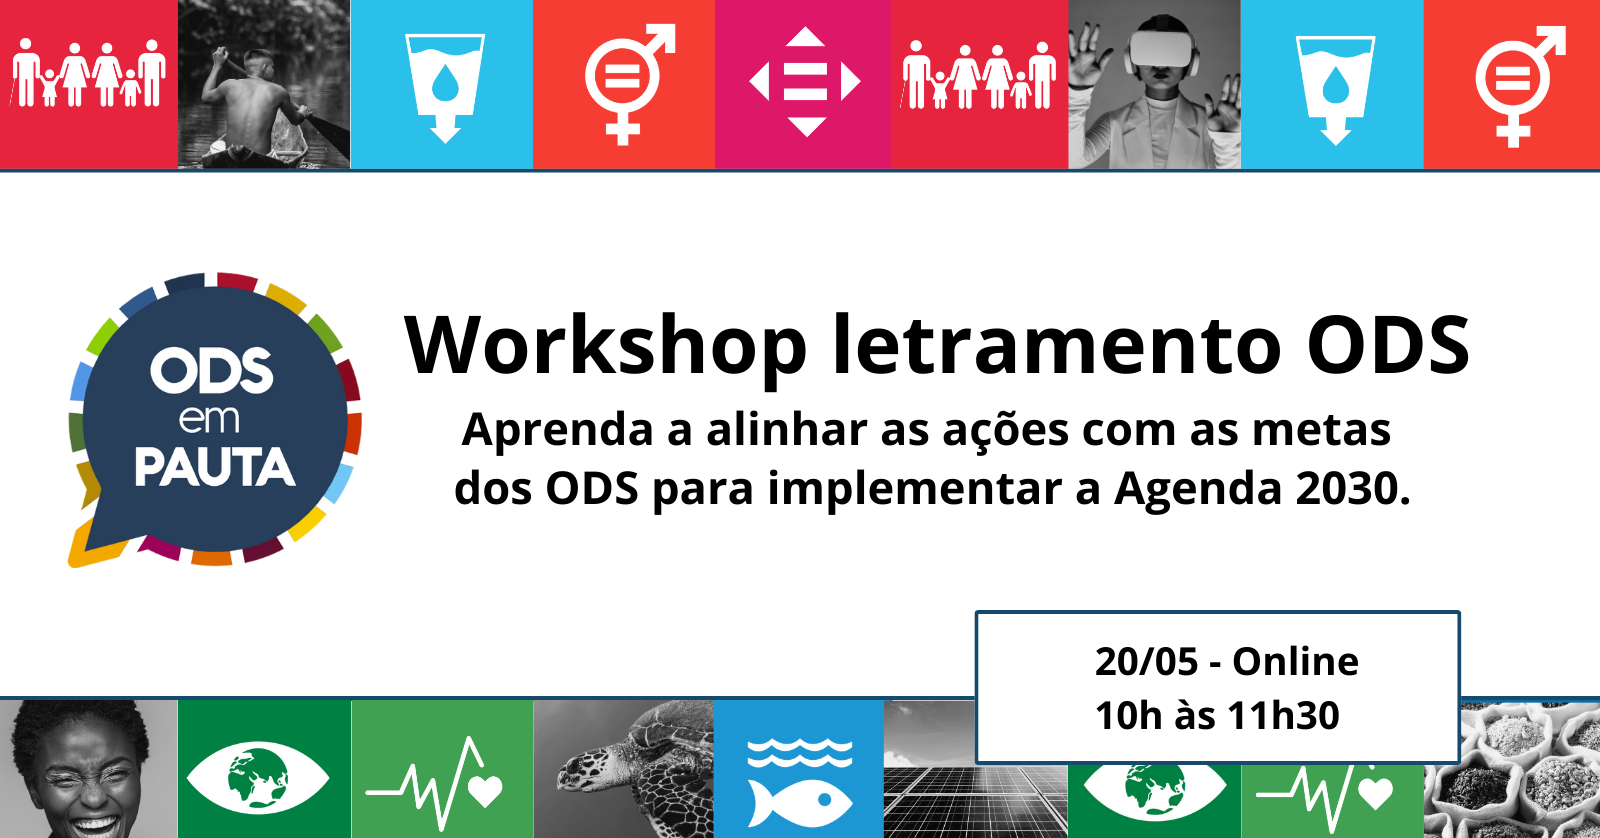  ODS em Pauta – Workshop Letramento ODS